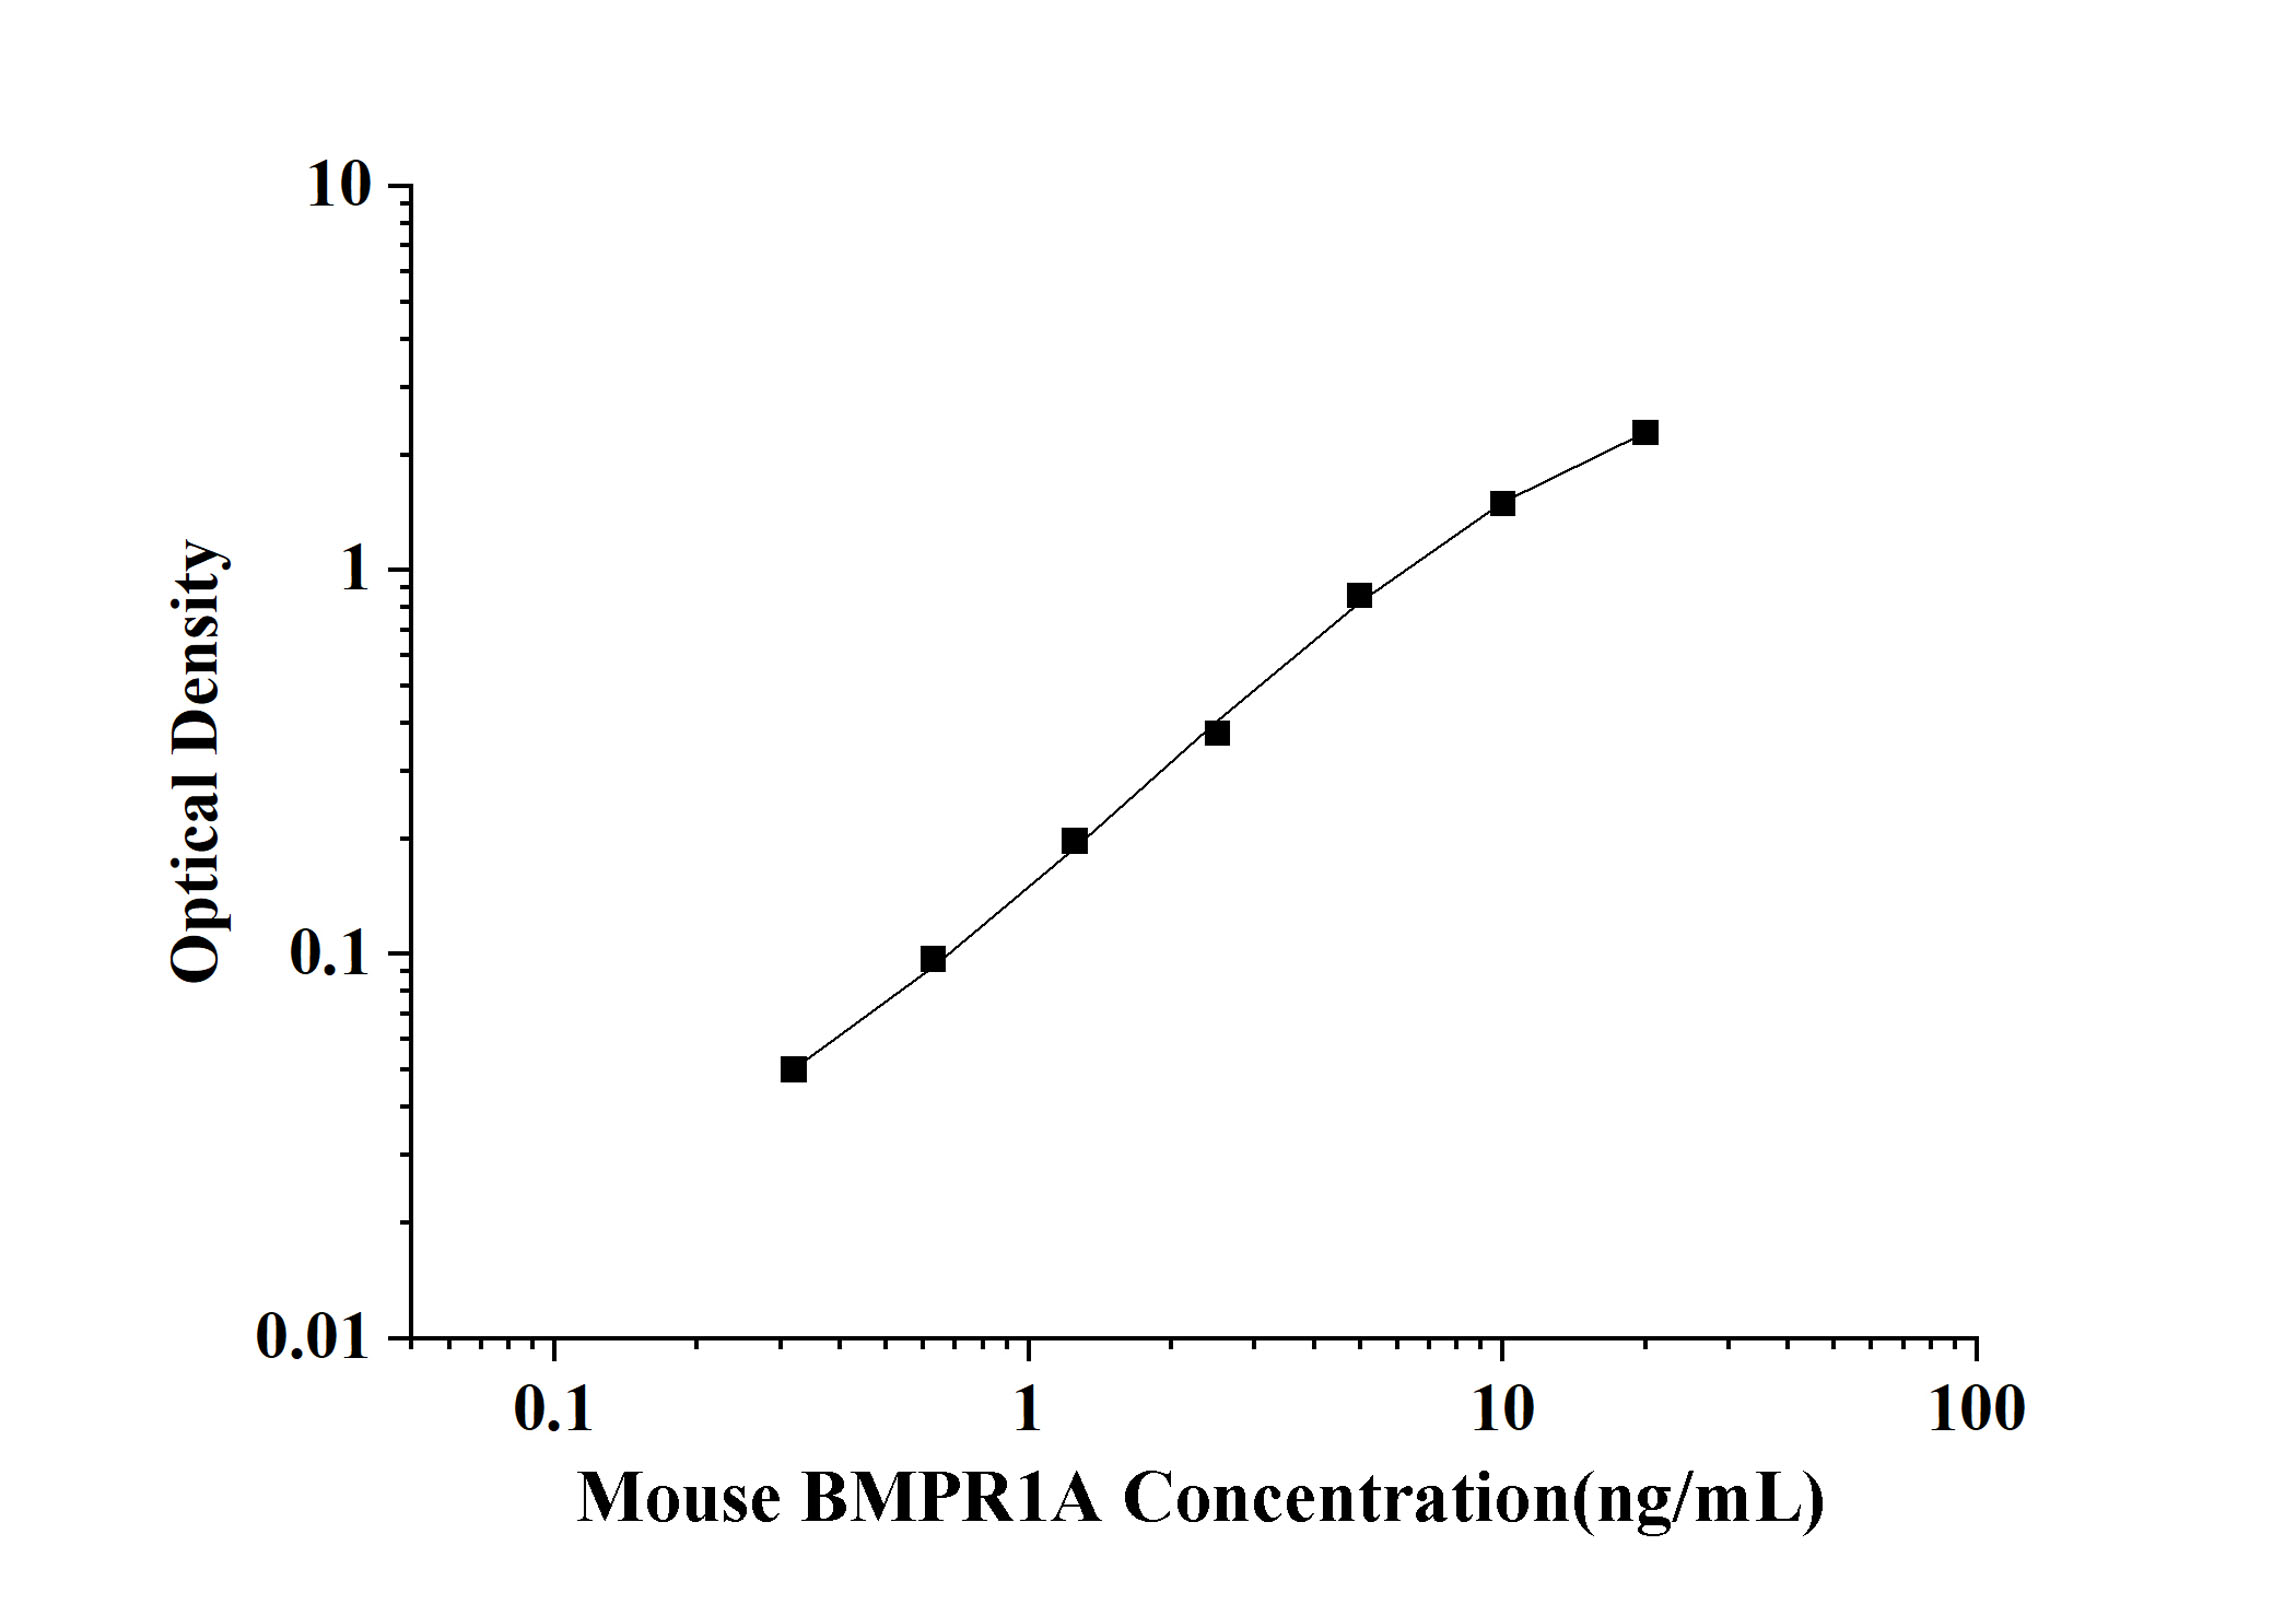 Mouse BMPR1A(Bone Morphogenetic Protein Receptor 1A) ELISA Kit